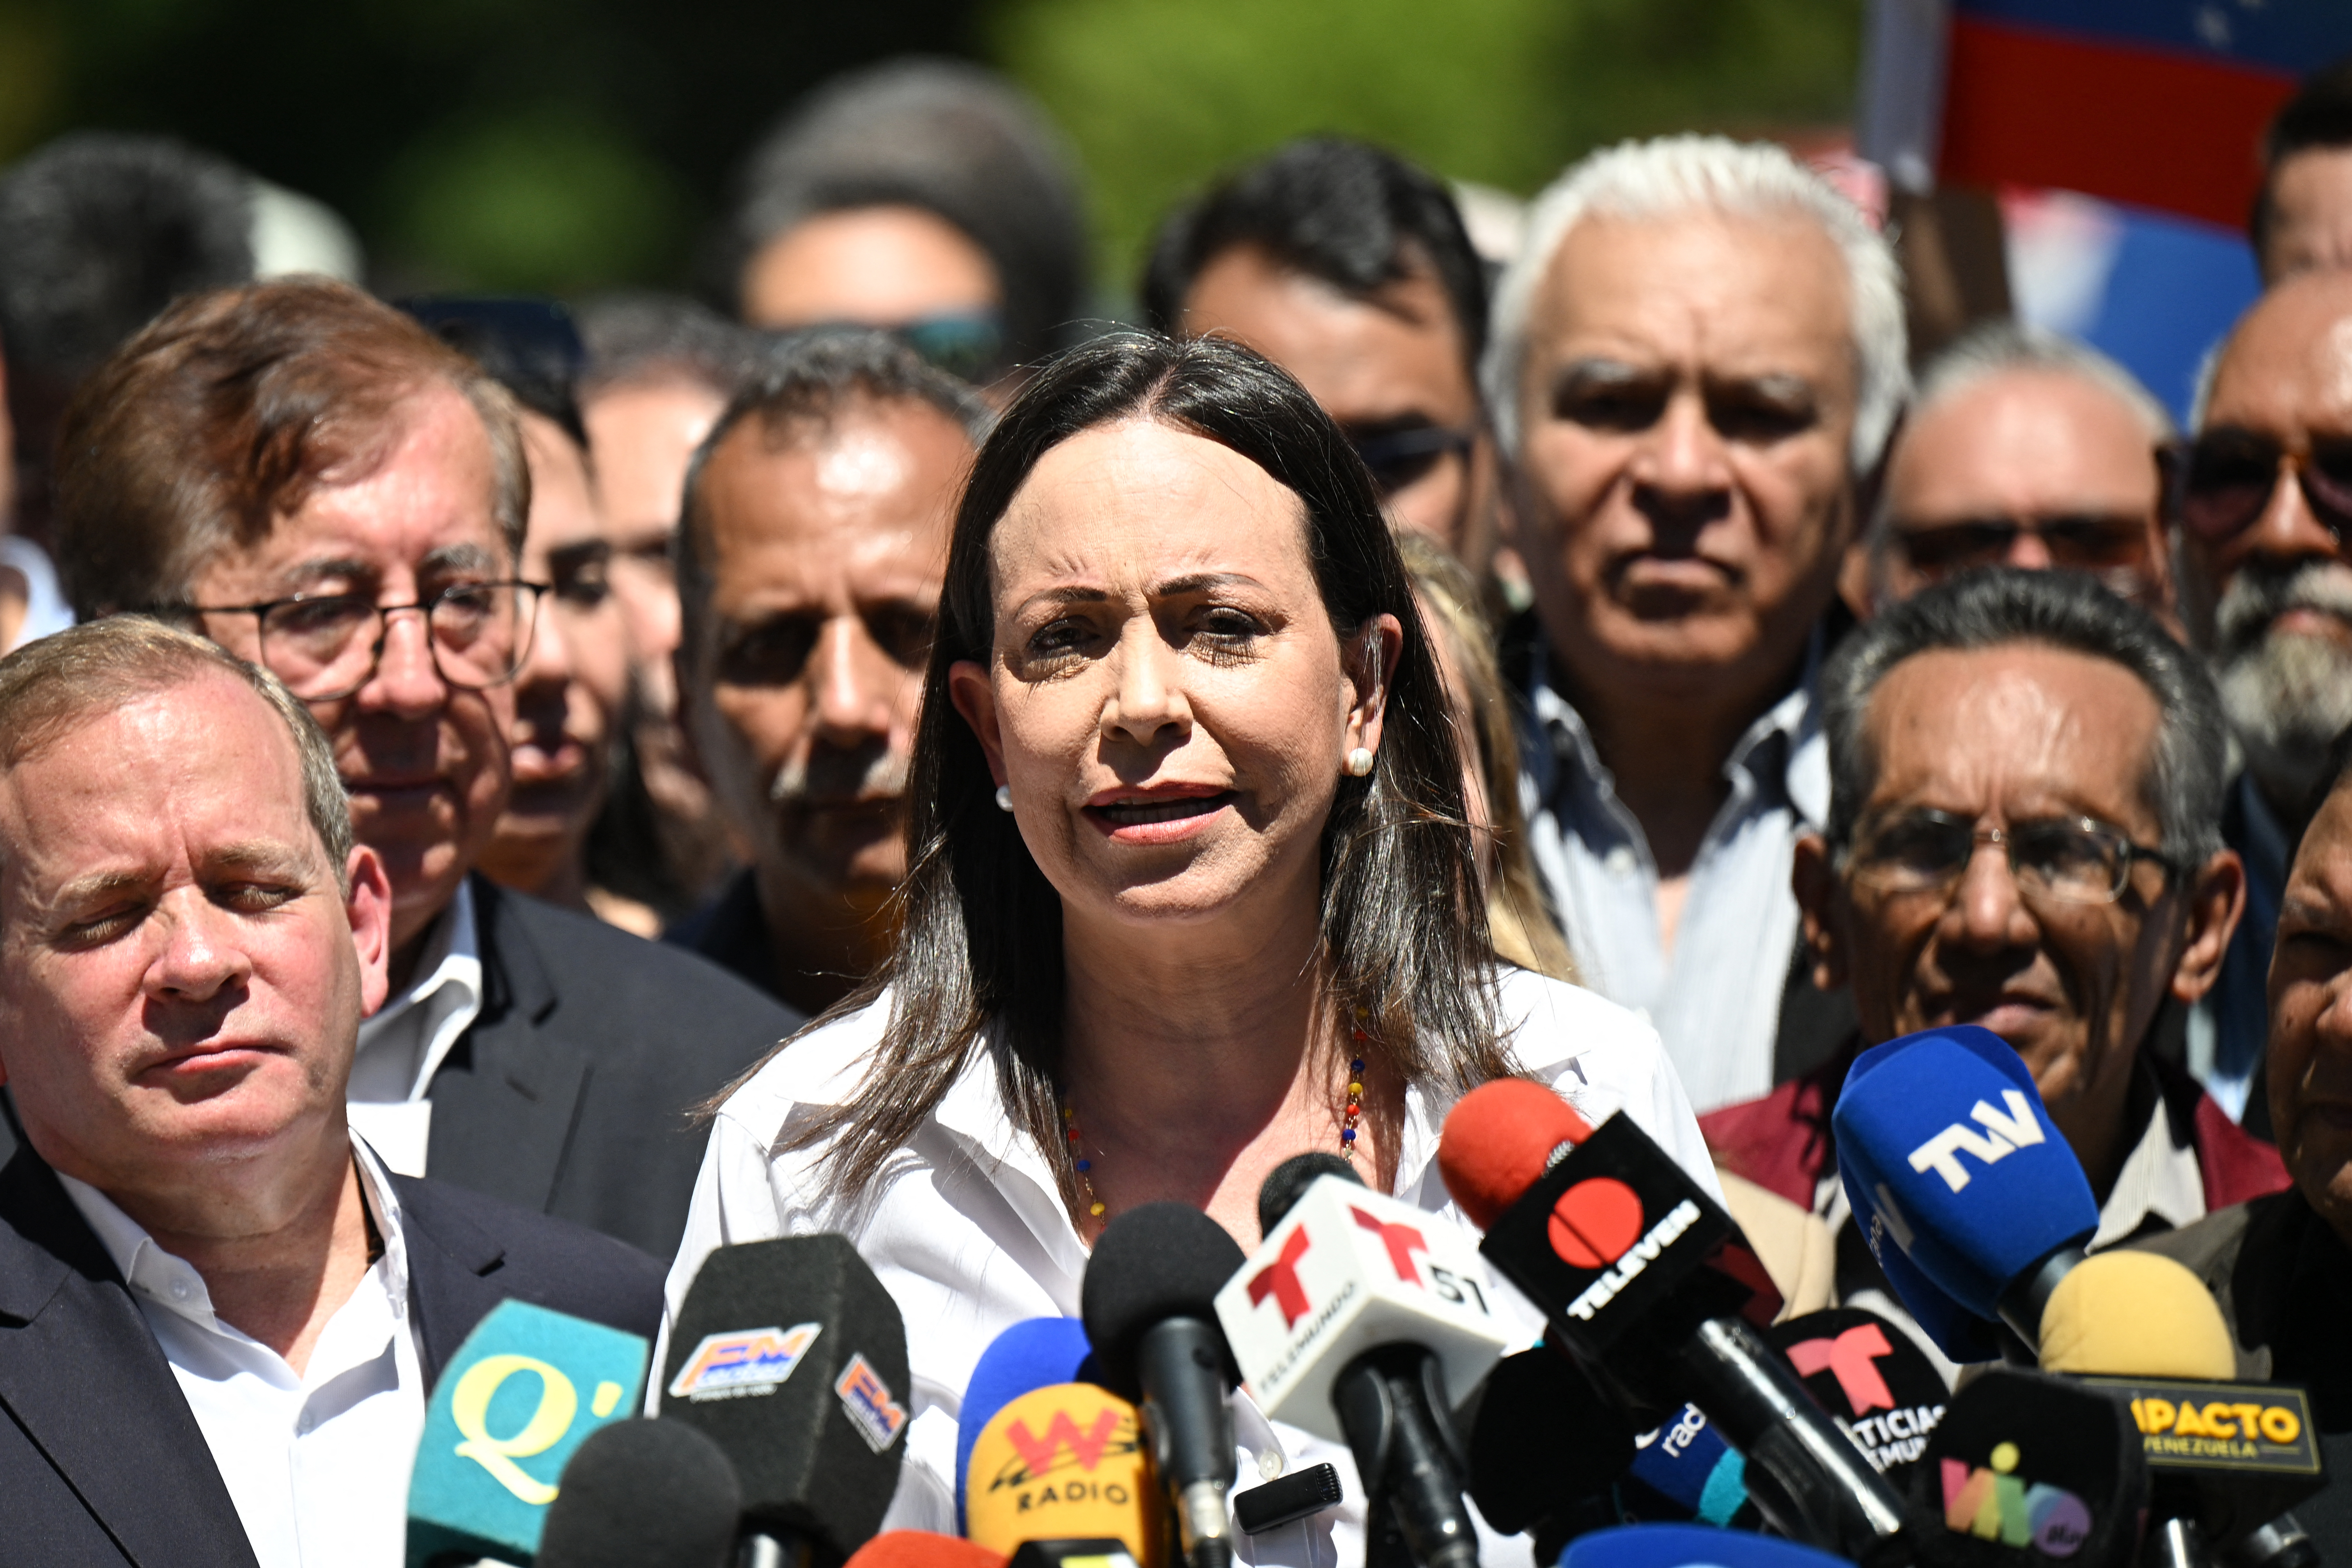 María Corina Machado's warning about increasing repression in Venezuela